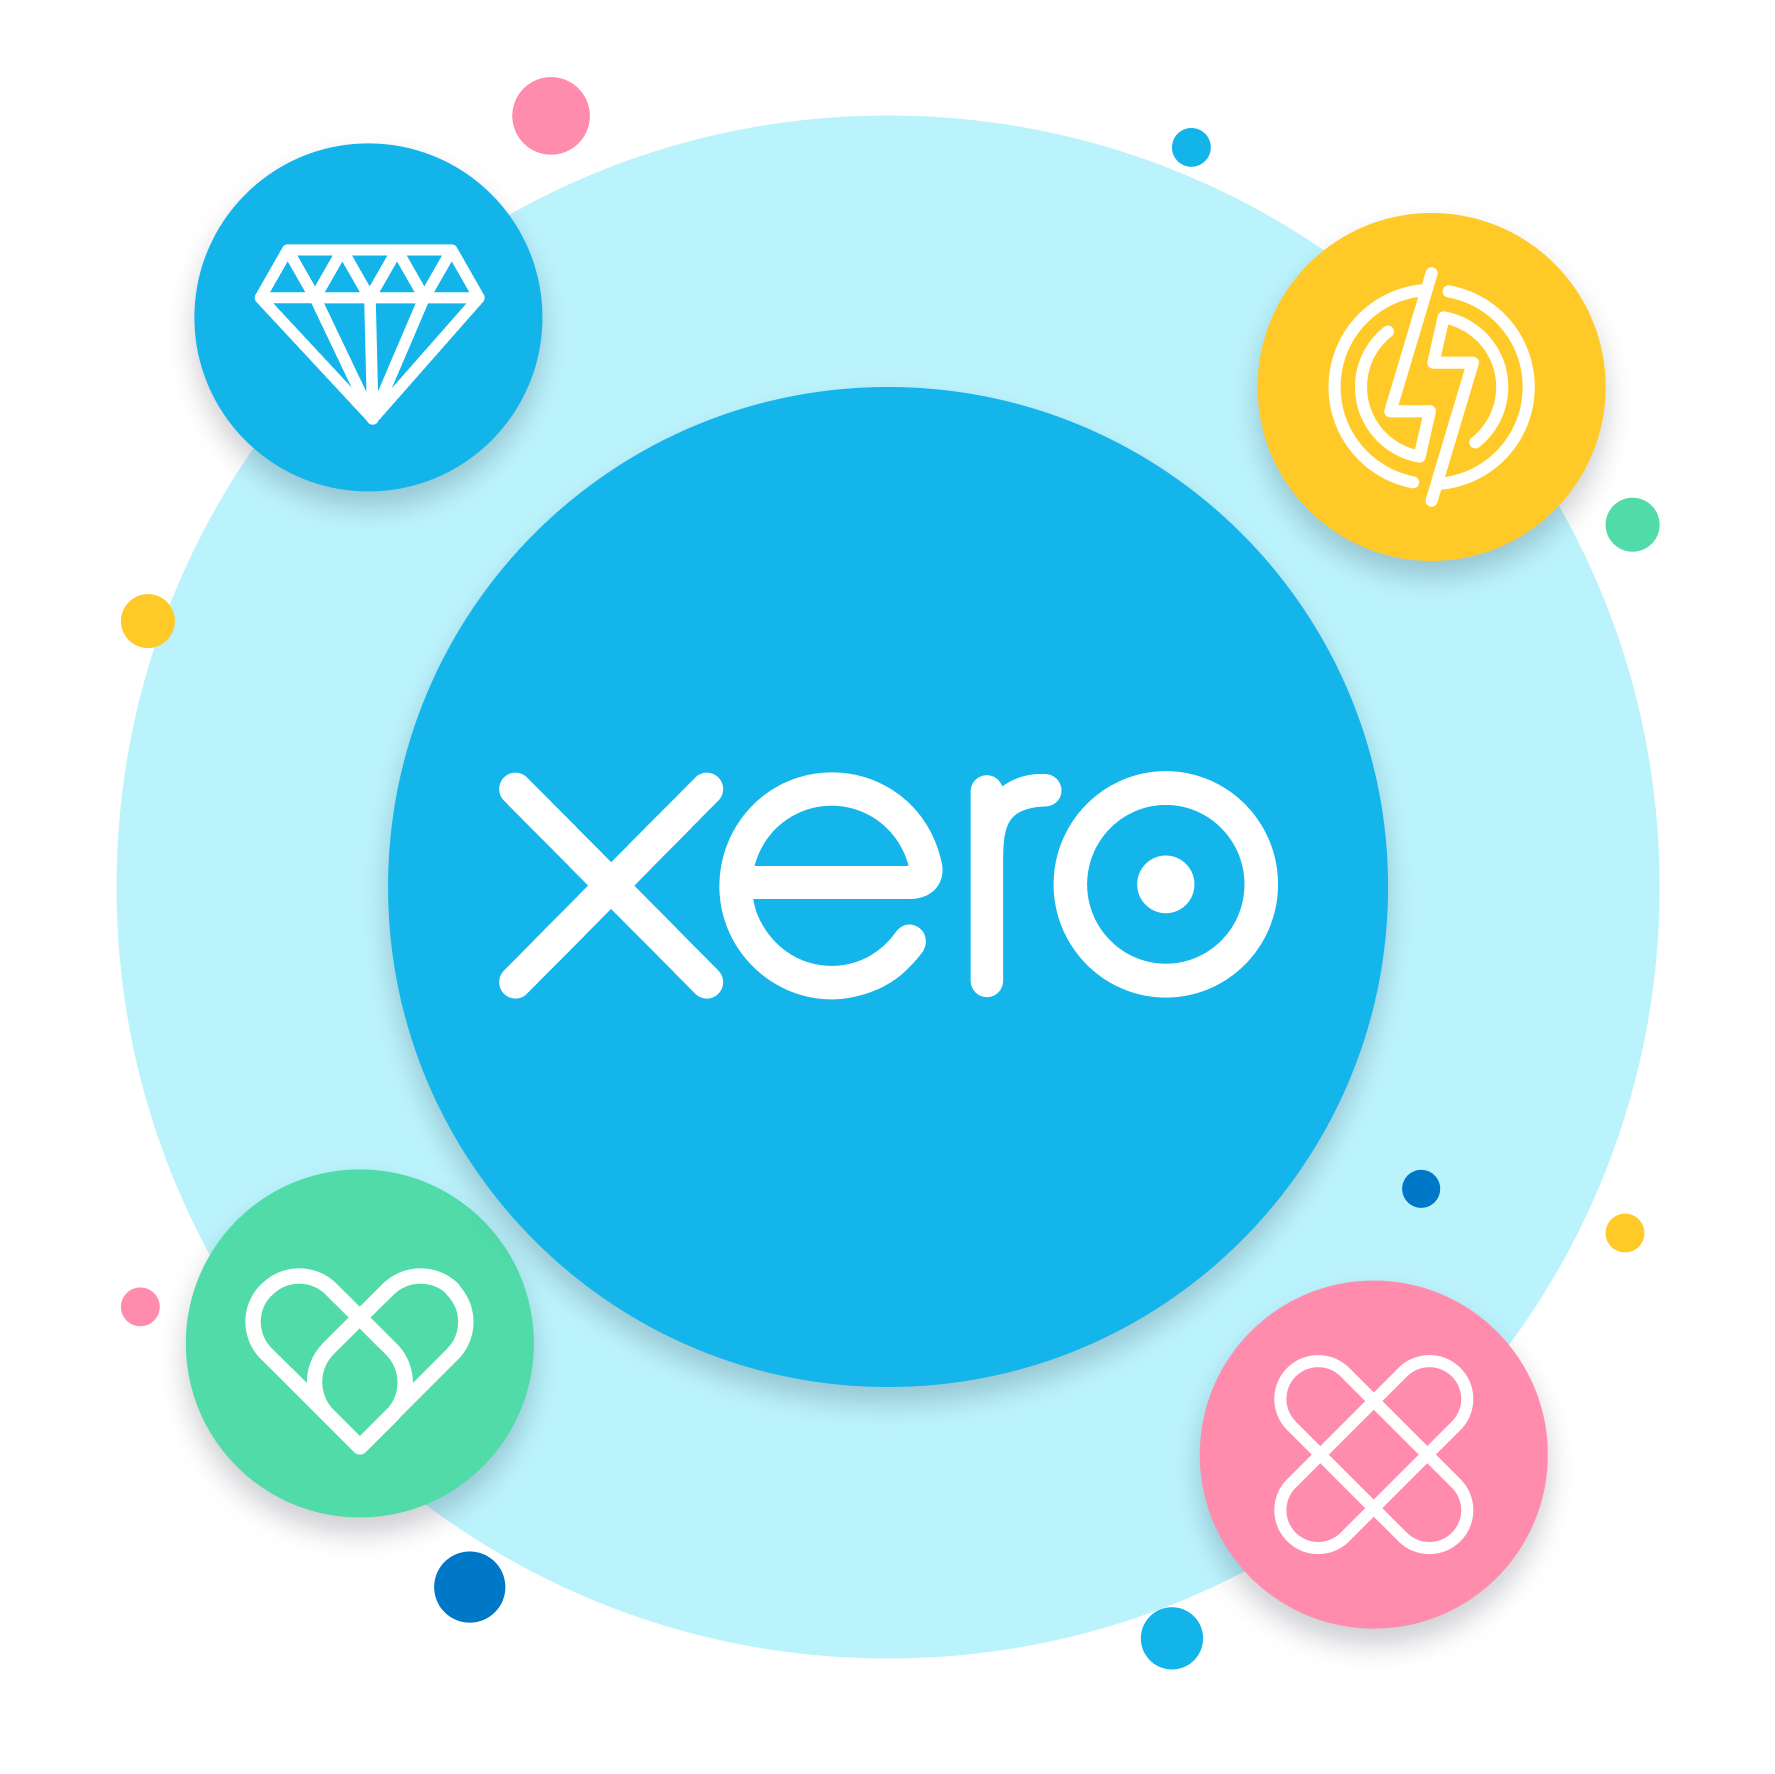 Four icons representing the four Xero values.